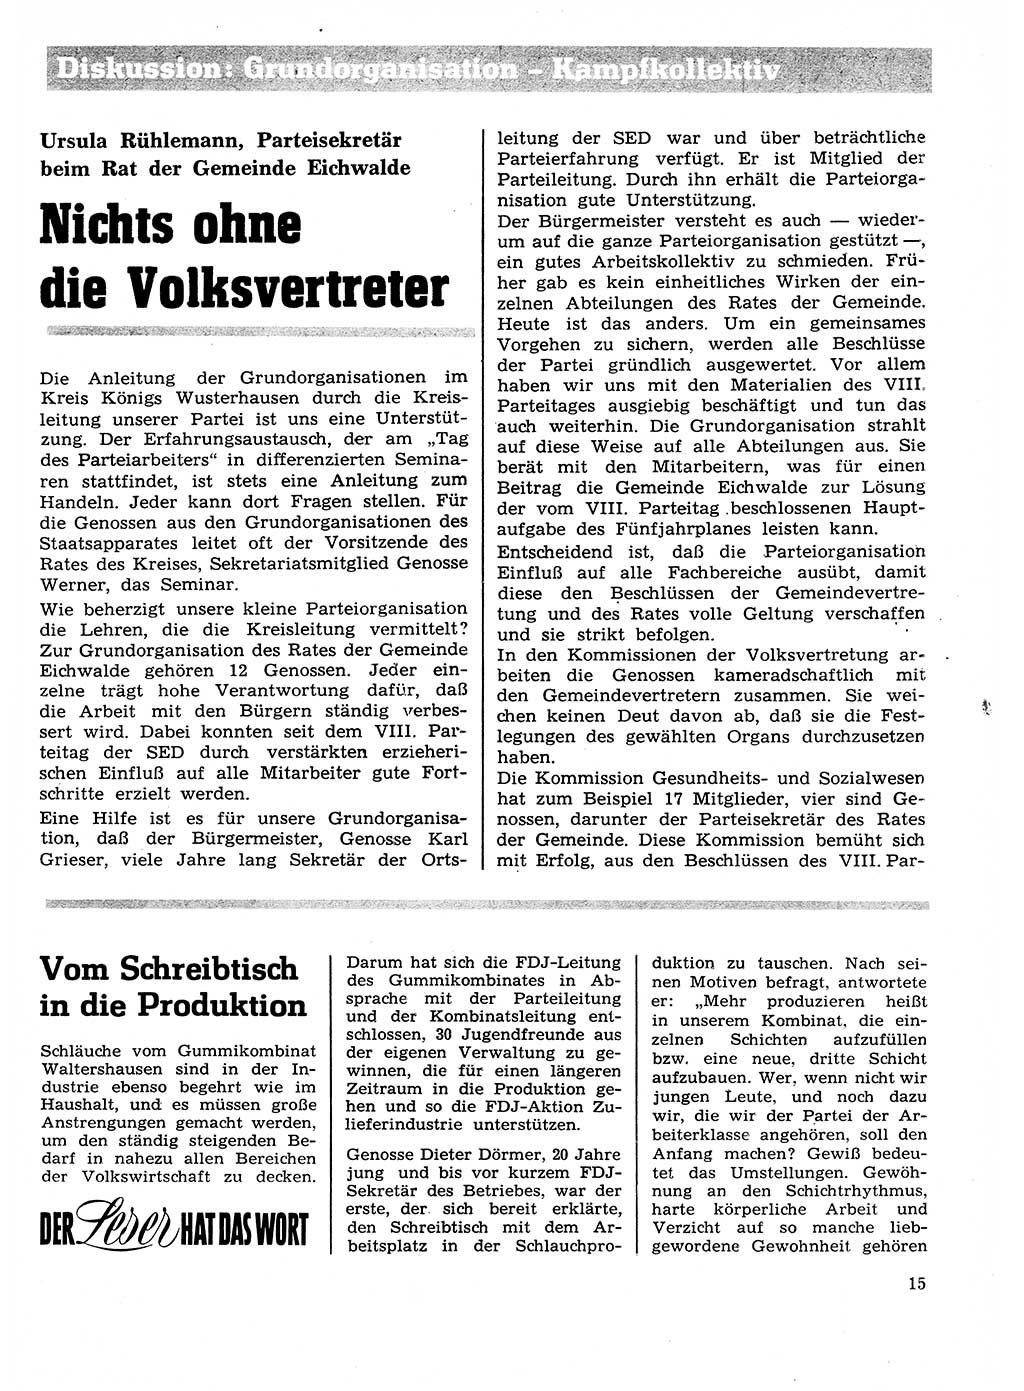 Neuer Weg (NW), Organ des Zentralkomitees (ZK) der SED (Sozialistische Einheitspartei Deutschlands) für Fragen des Parteilebens, 27. Jahrgang [Deutsche Demokratische Republik (DDR)] 1972, Seite 15 (NW ZK SED DDR 1972, S. 15)